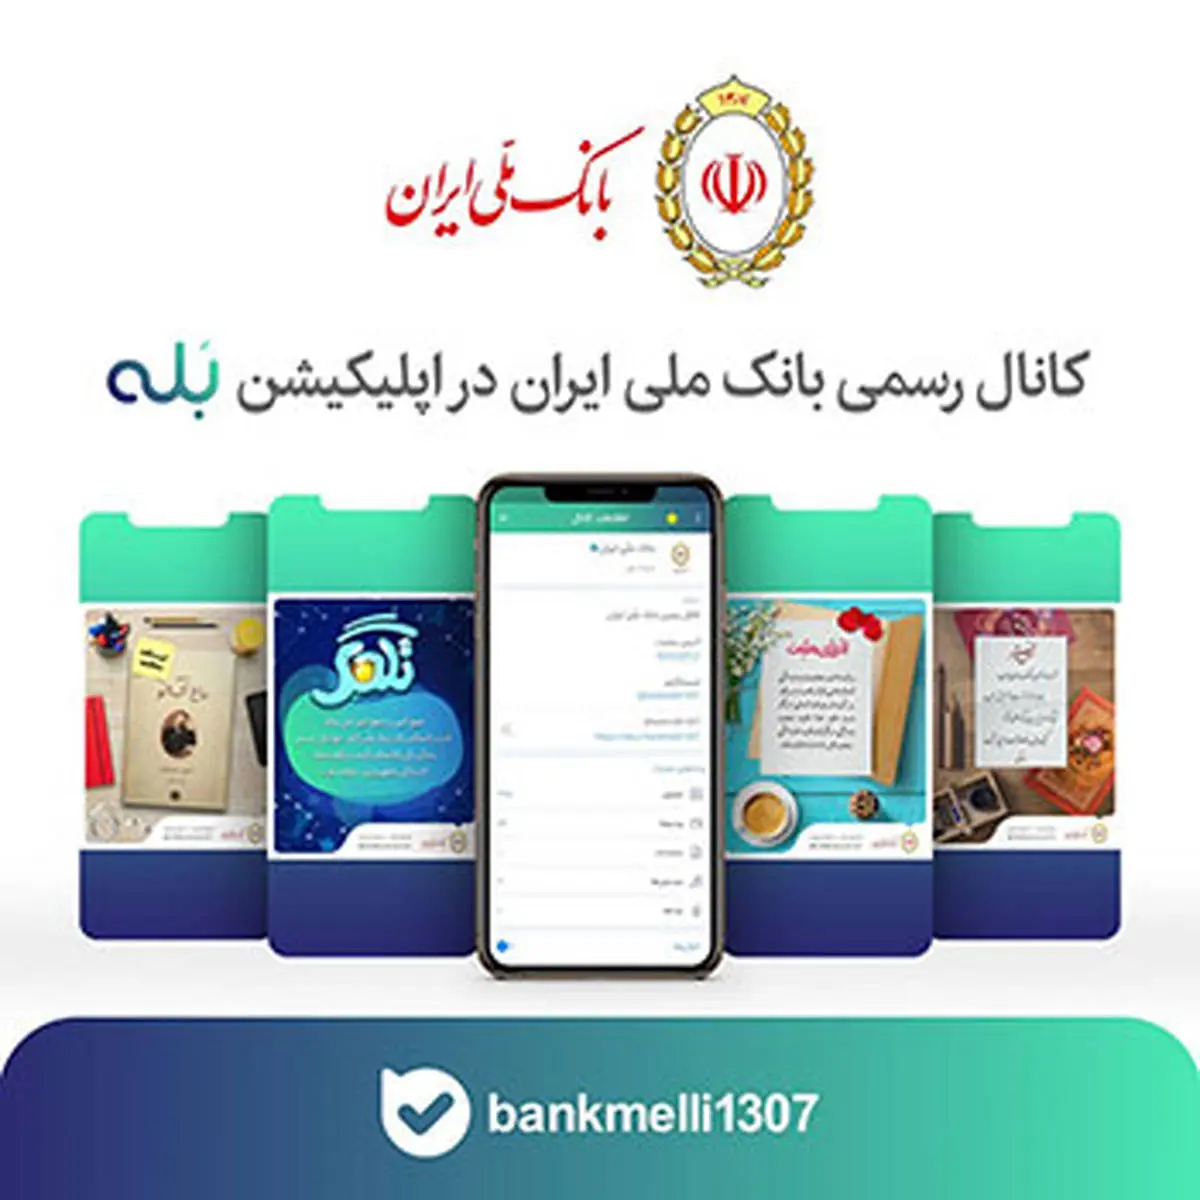 پایان مهلت شرکت در نظرسنجی کانال بانک ملی ایران

